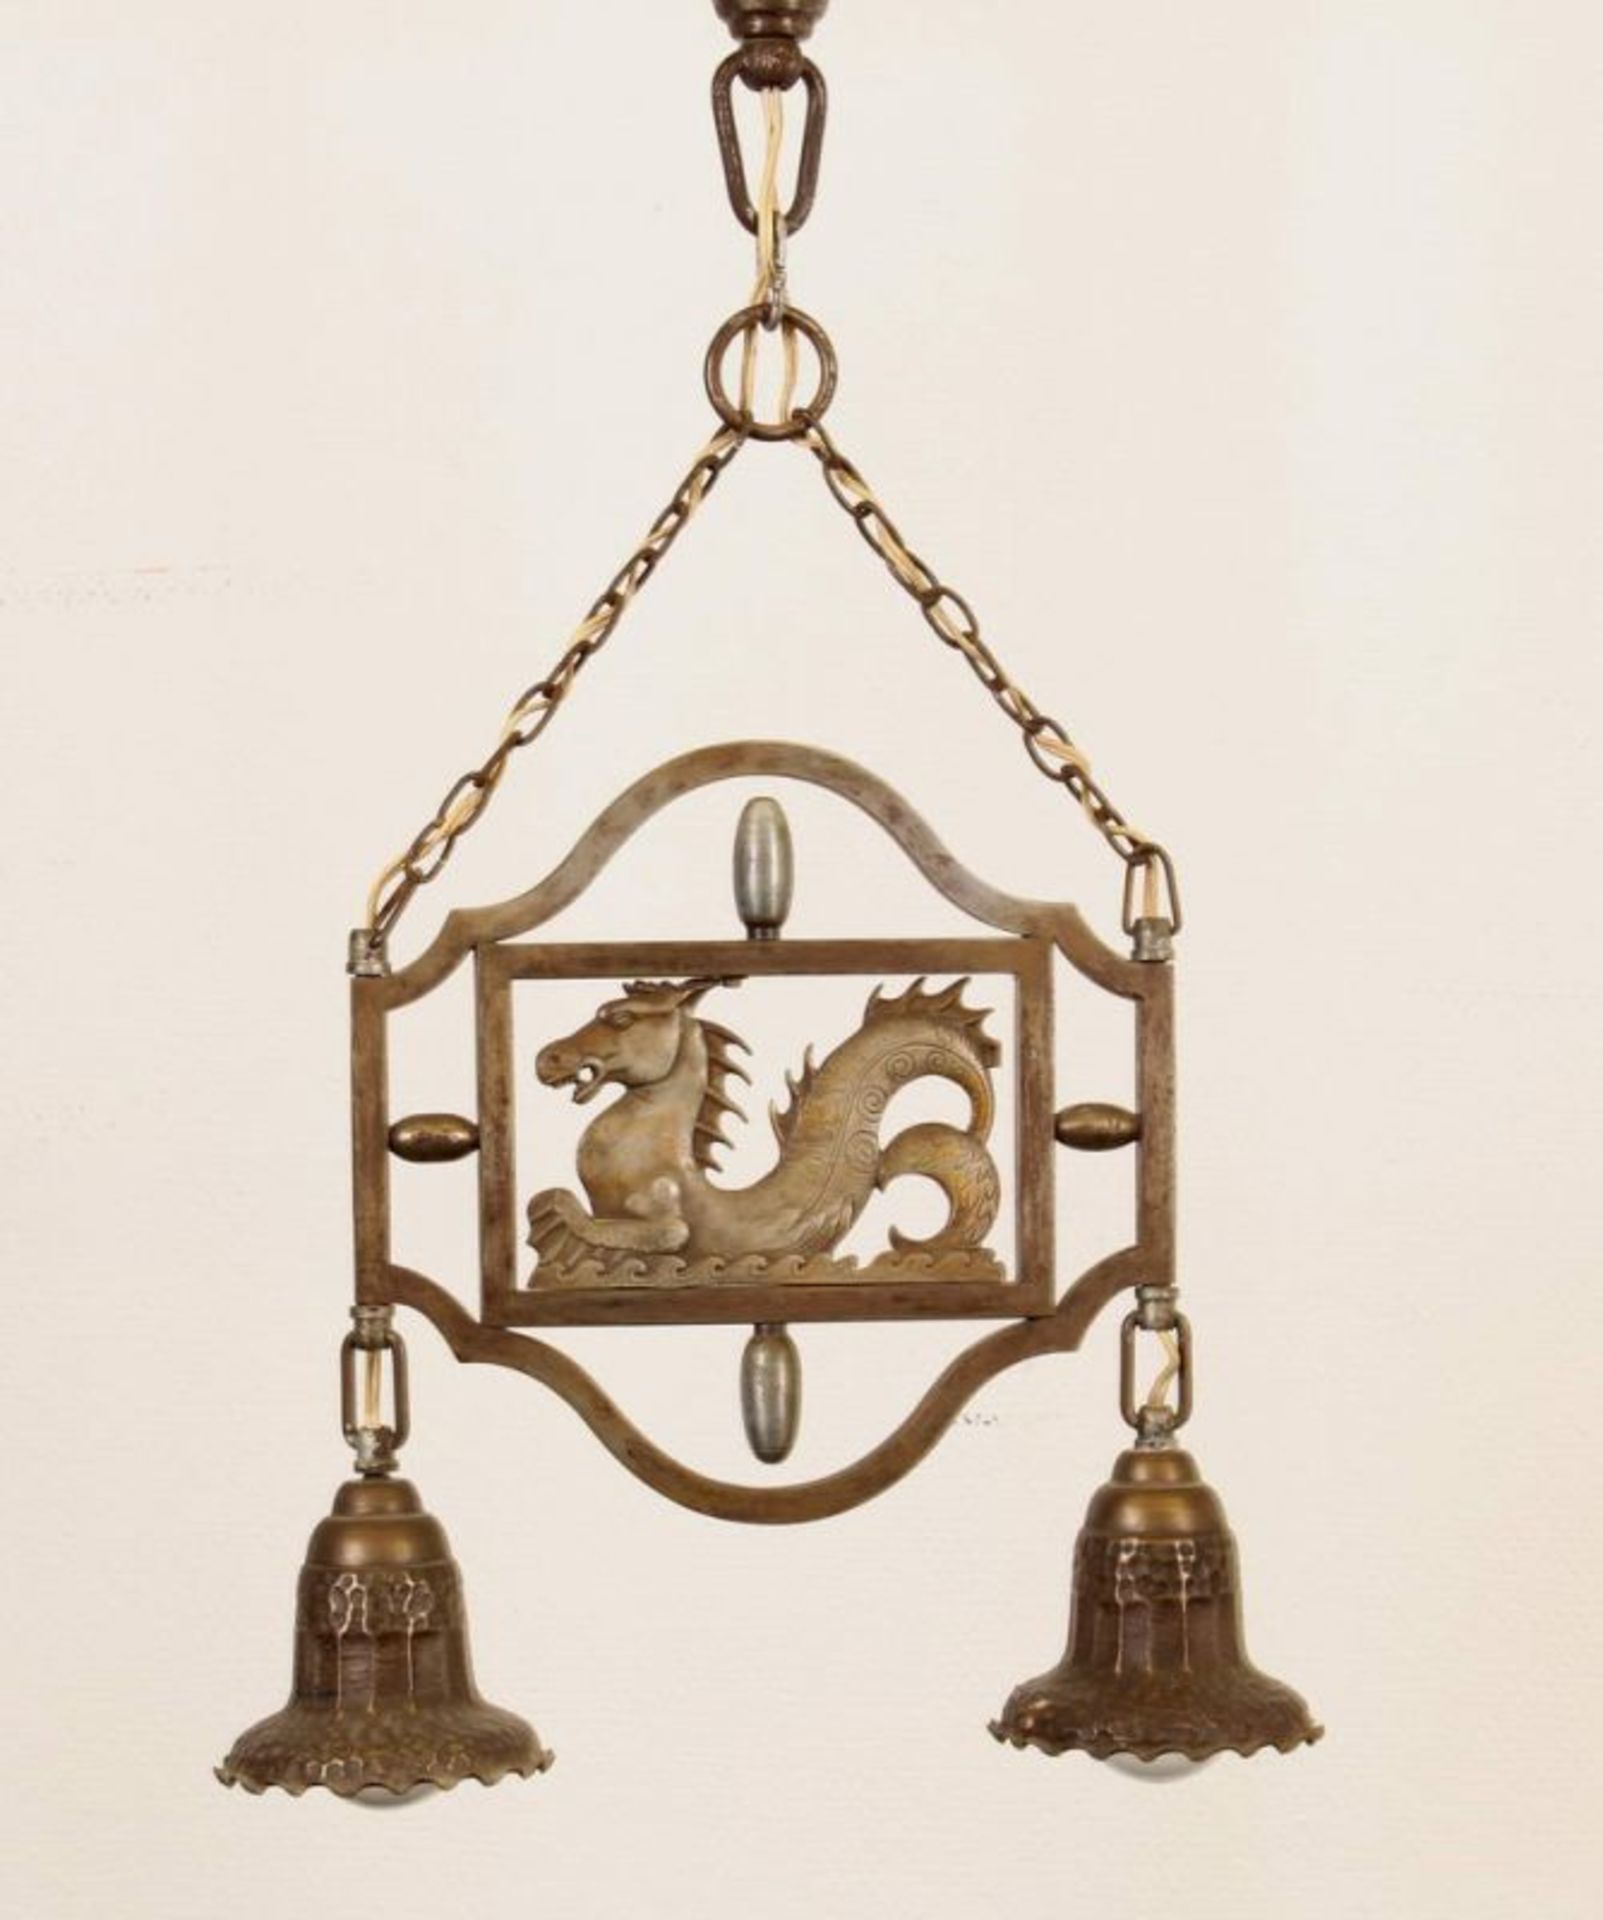 Deckenlampe, Metall, mit Fabeltier-Motiv, zweiflammig, elektrifiziert, 60 cm hoch 20.00 % buyer's